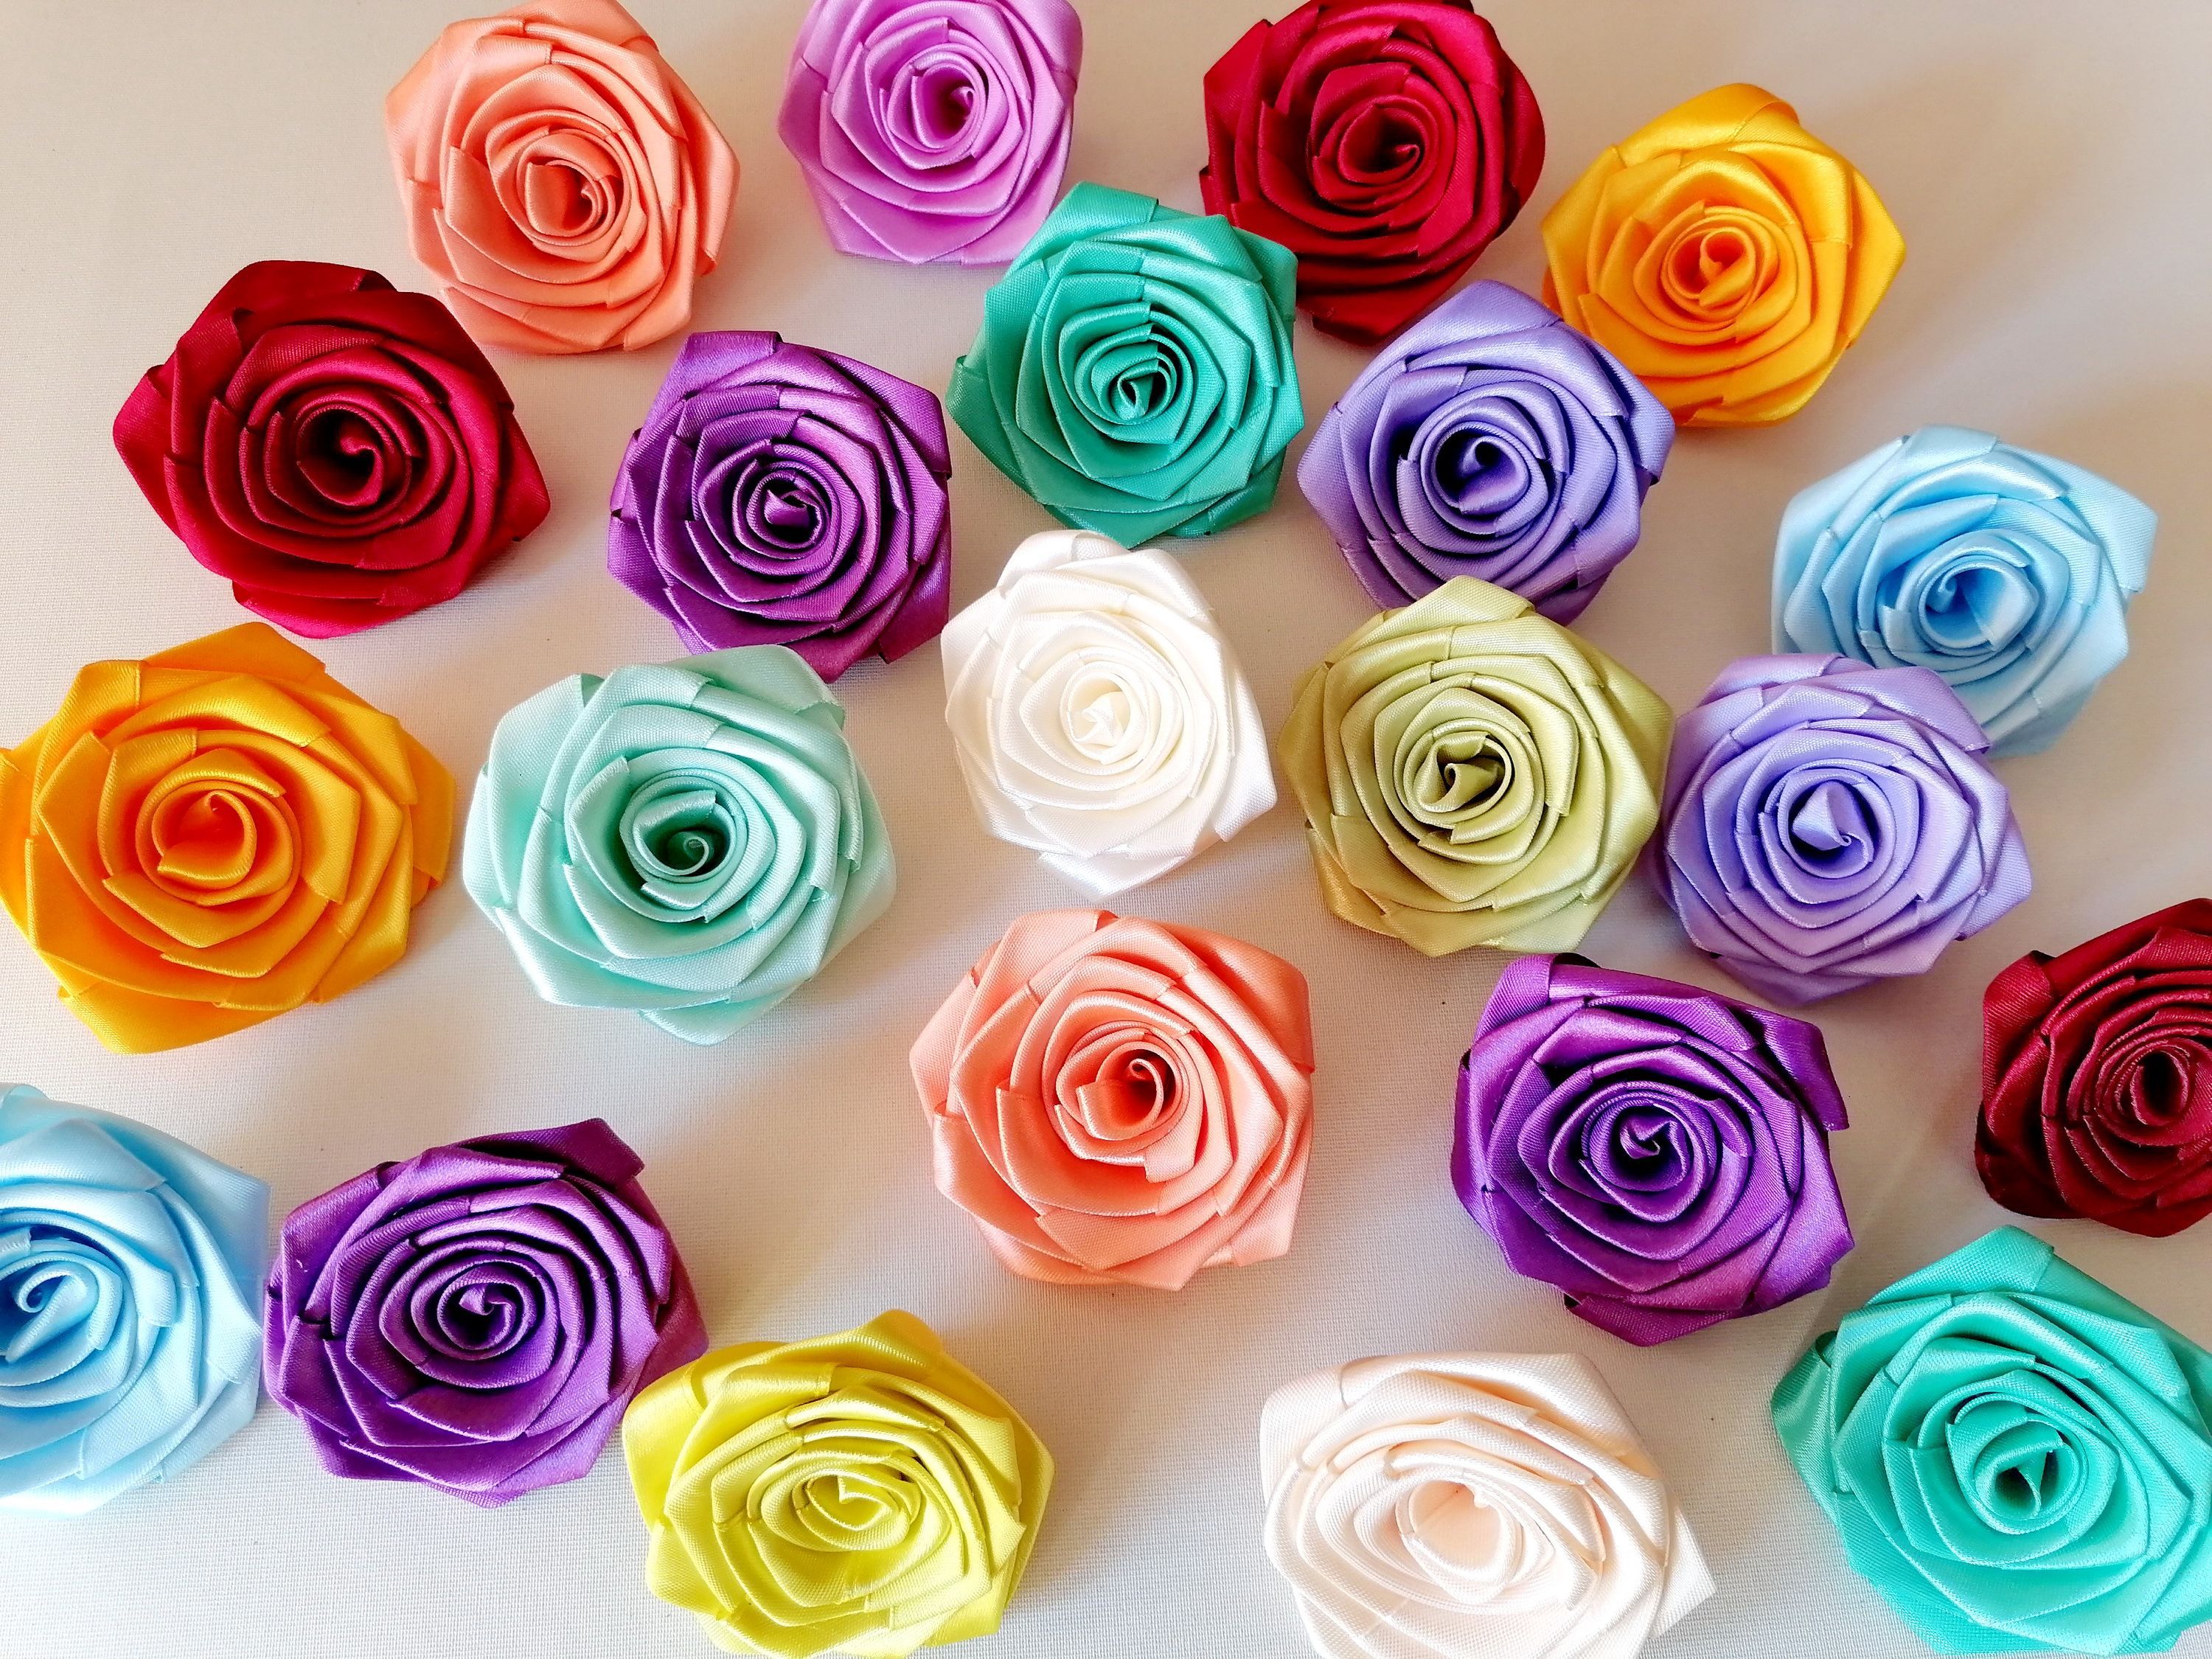 Несколько способов, как сделать розу из ленты своими руками🌸 Увлекательный контент в ОК